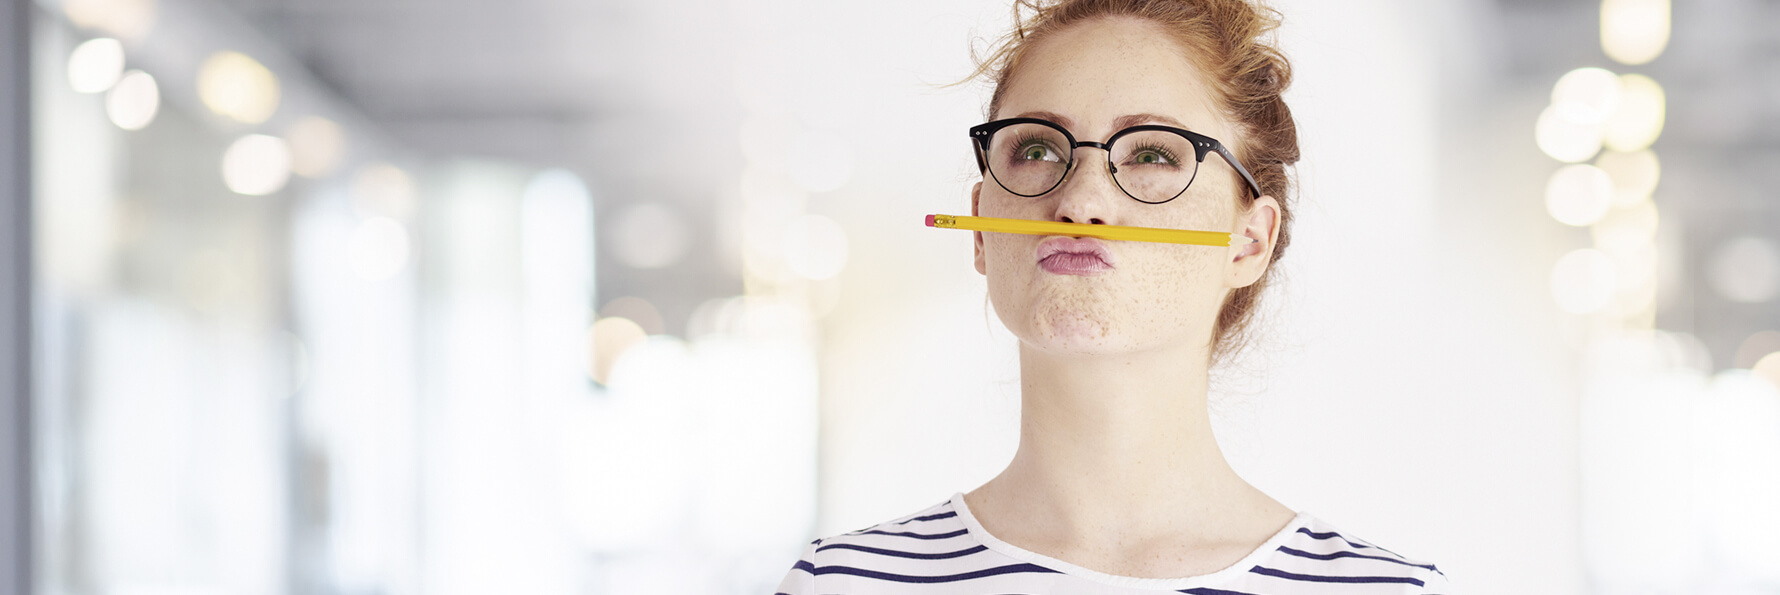 Eine junge Frau hält zwischen Nase und Oberlippe einen gelben Bleistift. Sie sieht dabei nach oben und macht einen grübelnden Gesichtsausdruck.